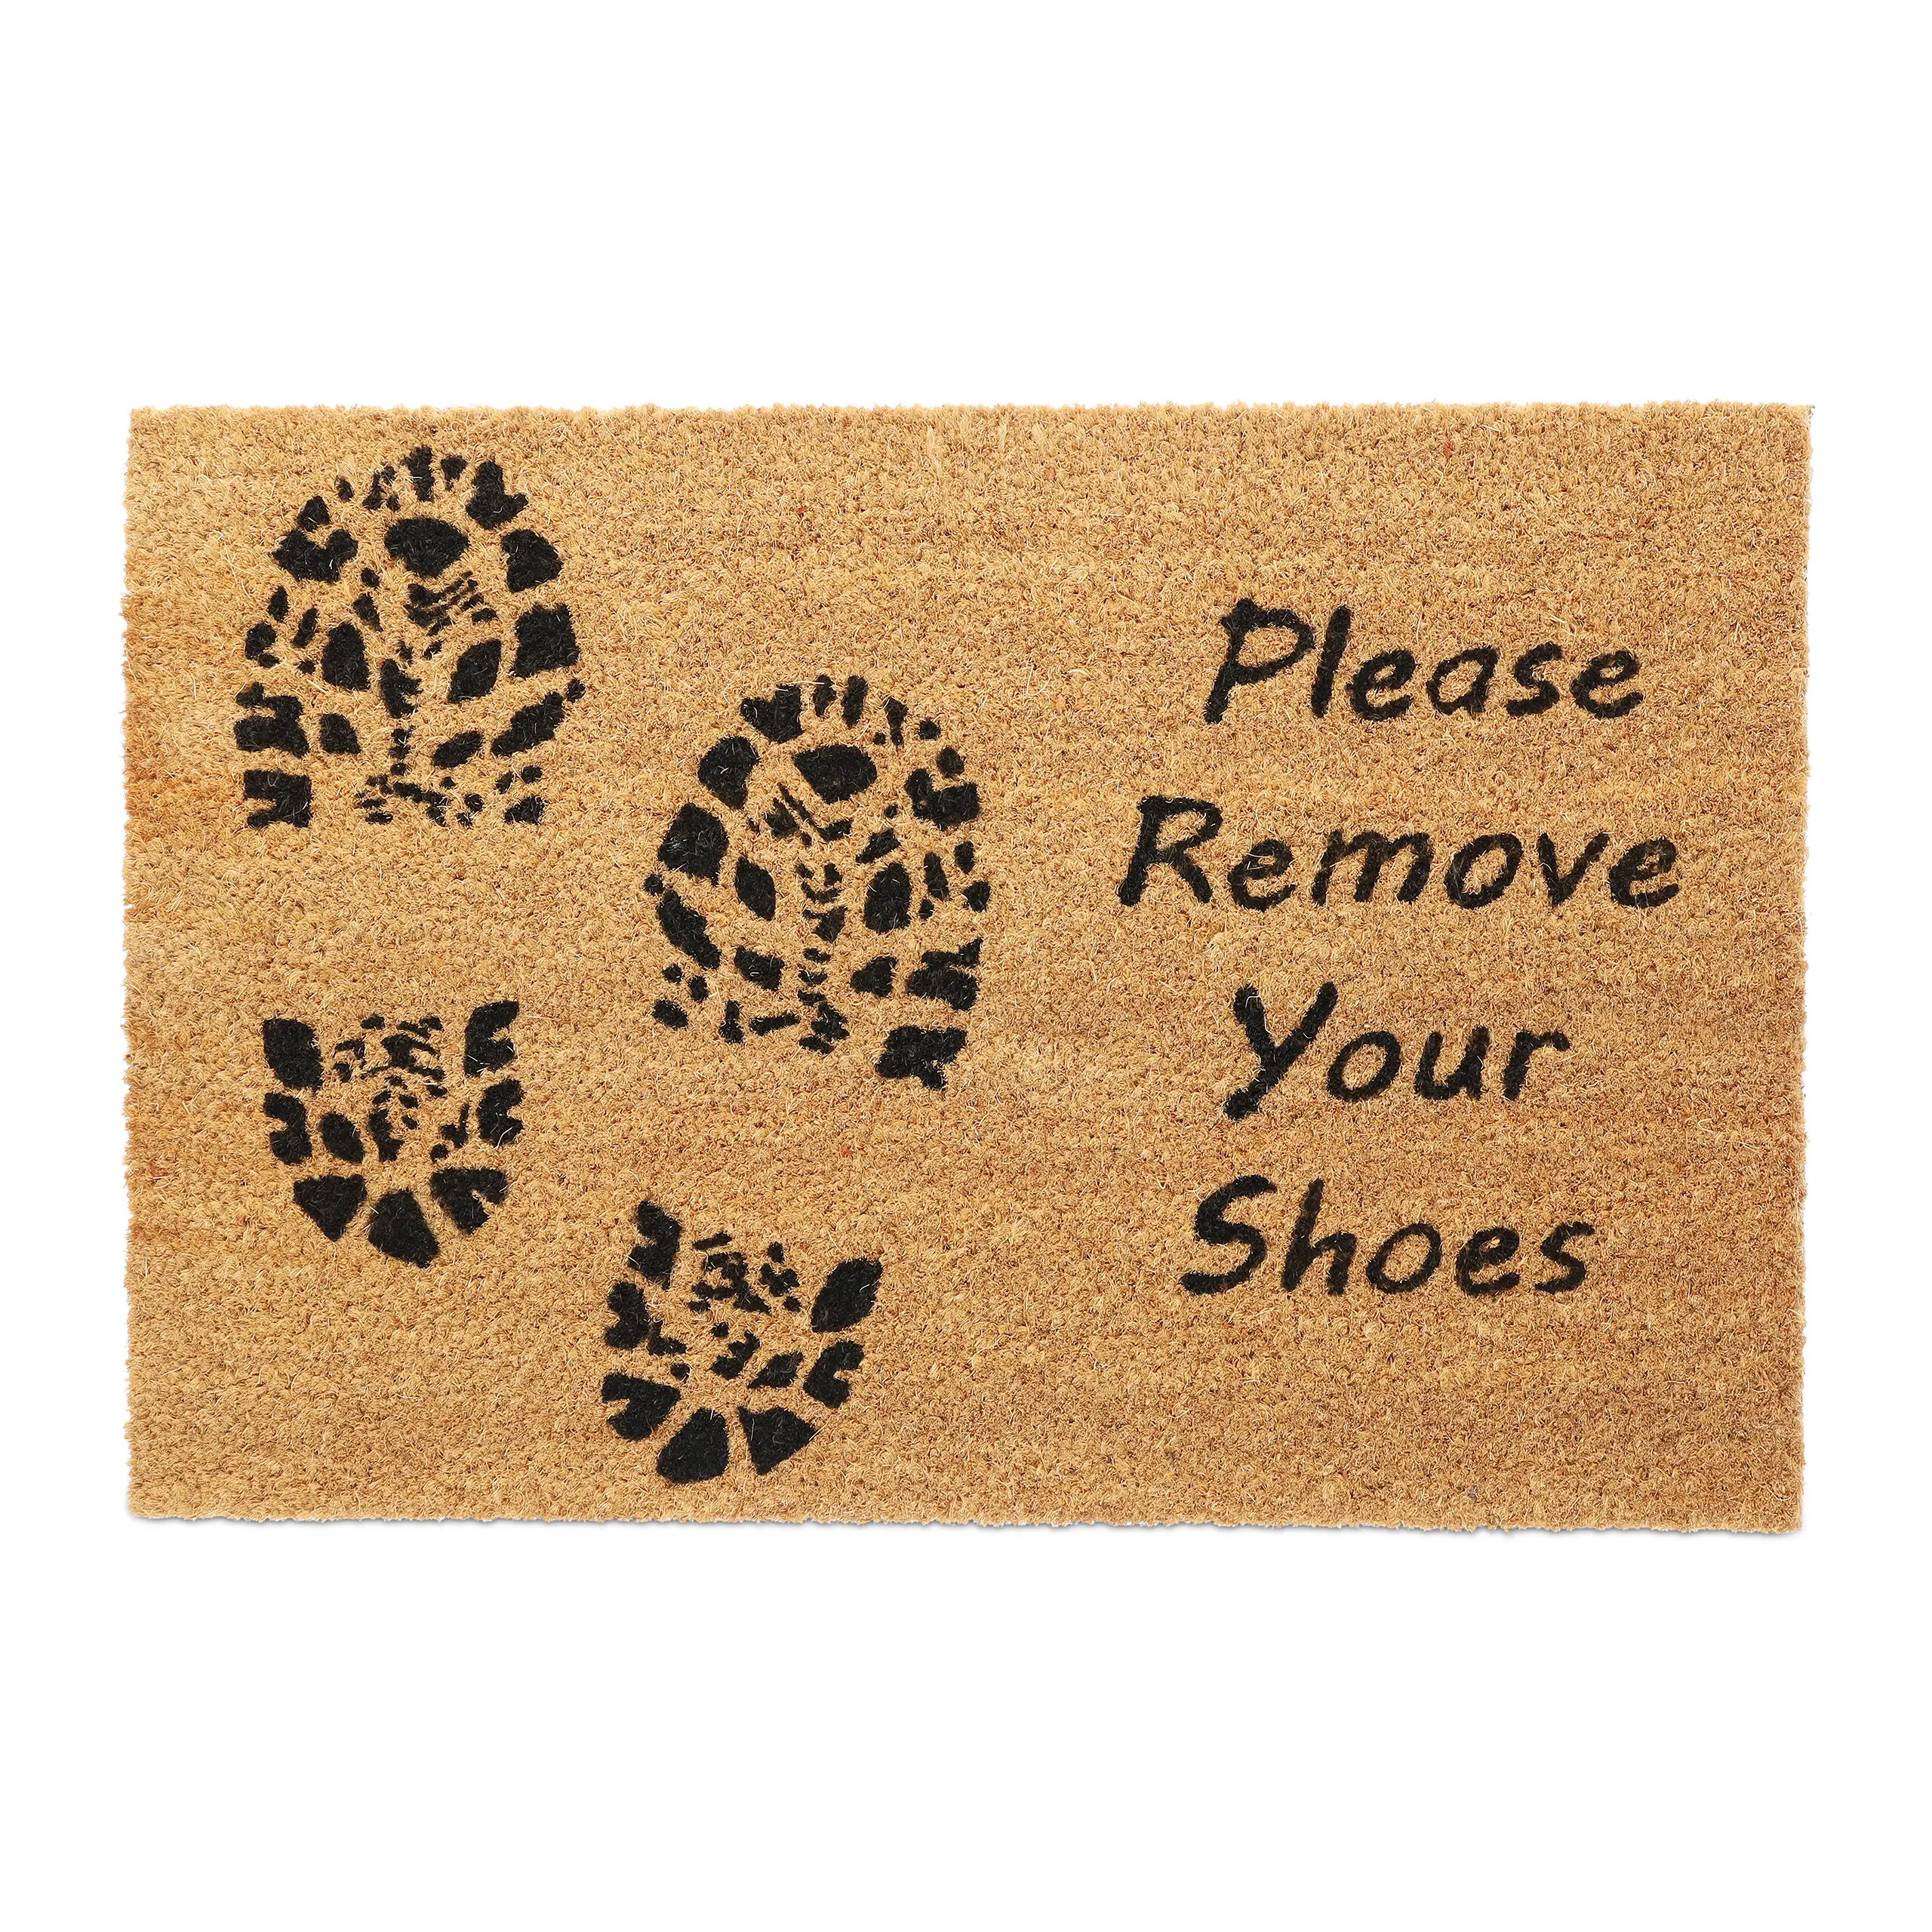 Kokos Shoes Remove Please Fu脽matte Your